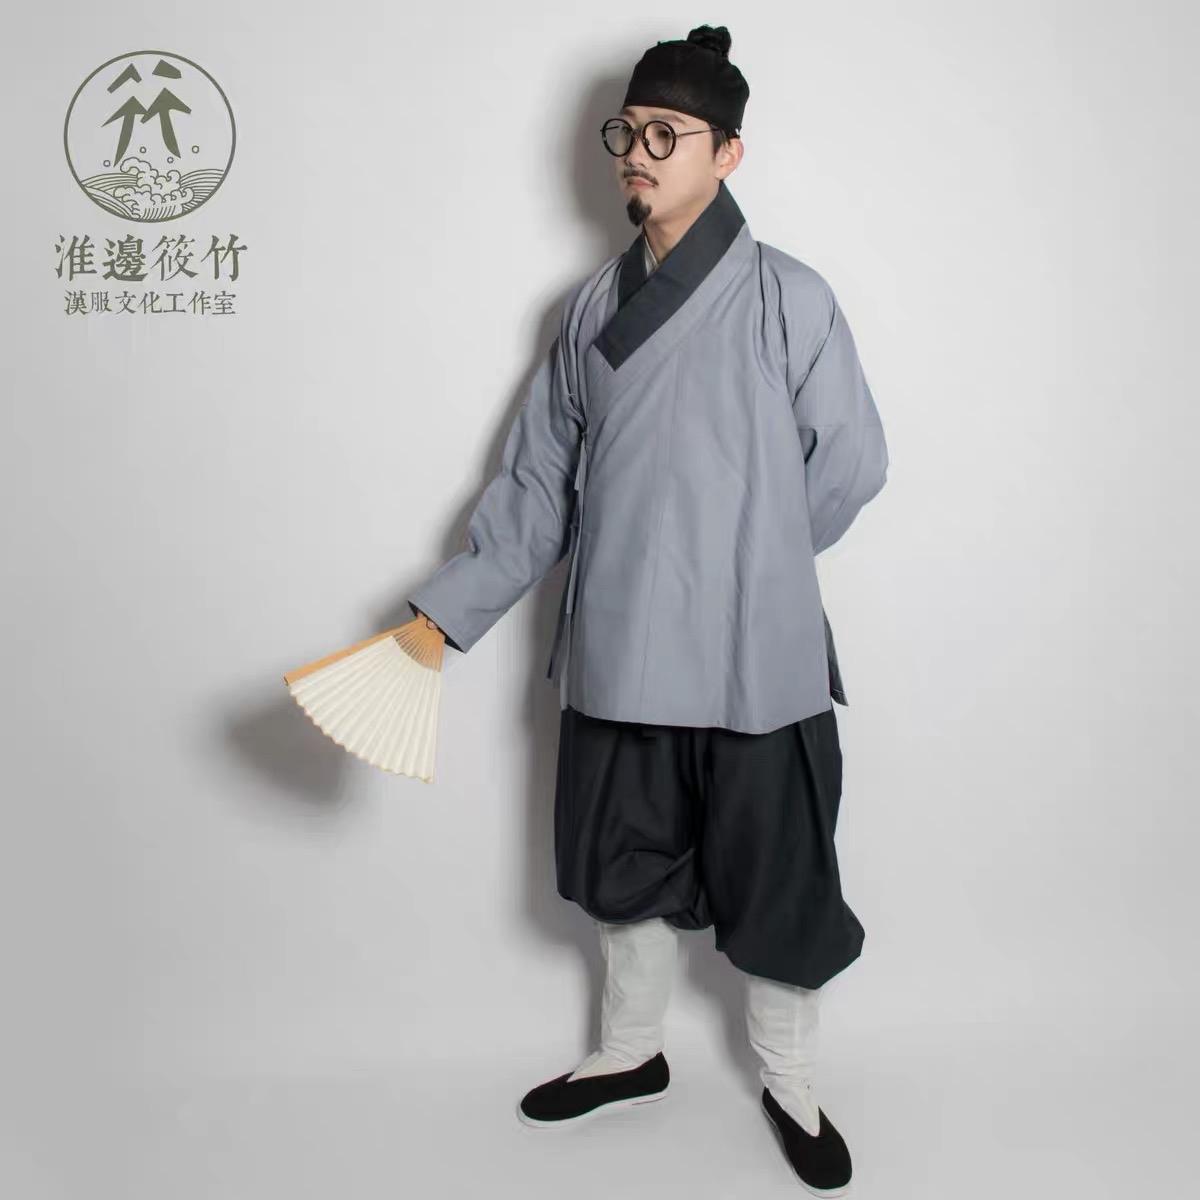 都是中国古人是传统服饰,为什么墨子粗布短褐式的汉服没有流行起来?